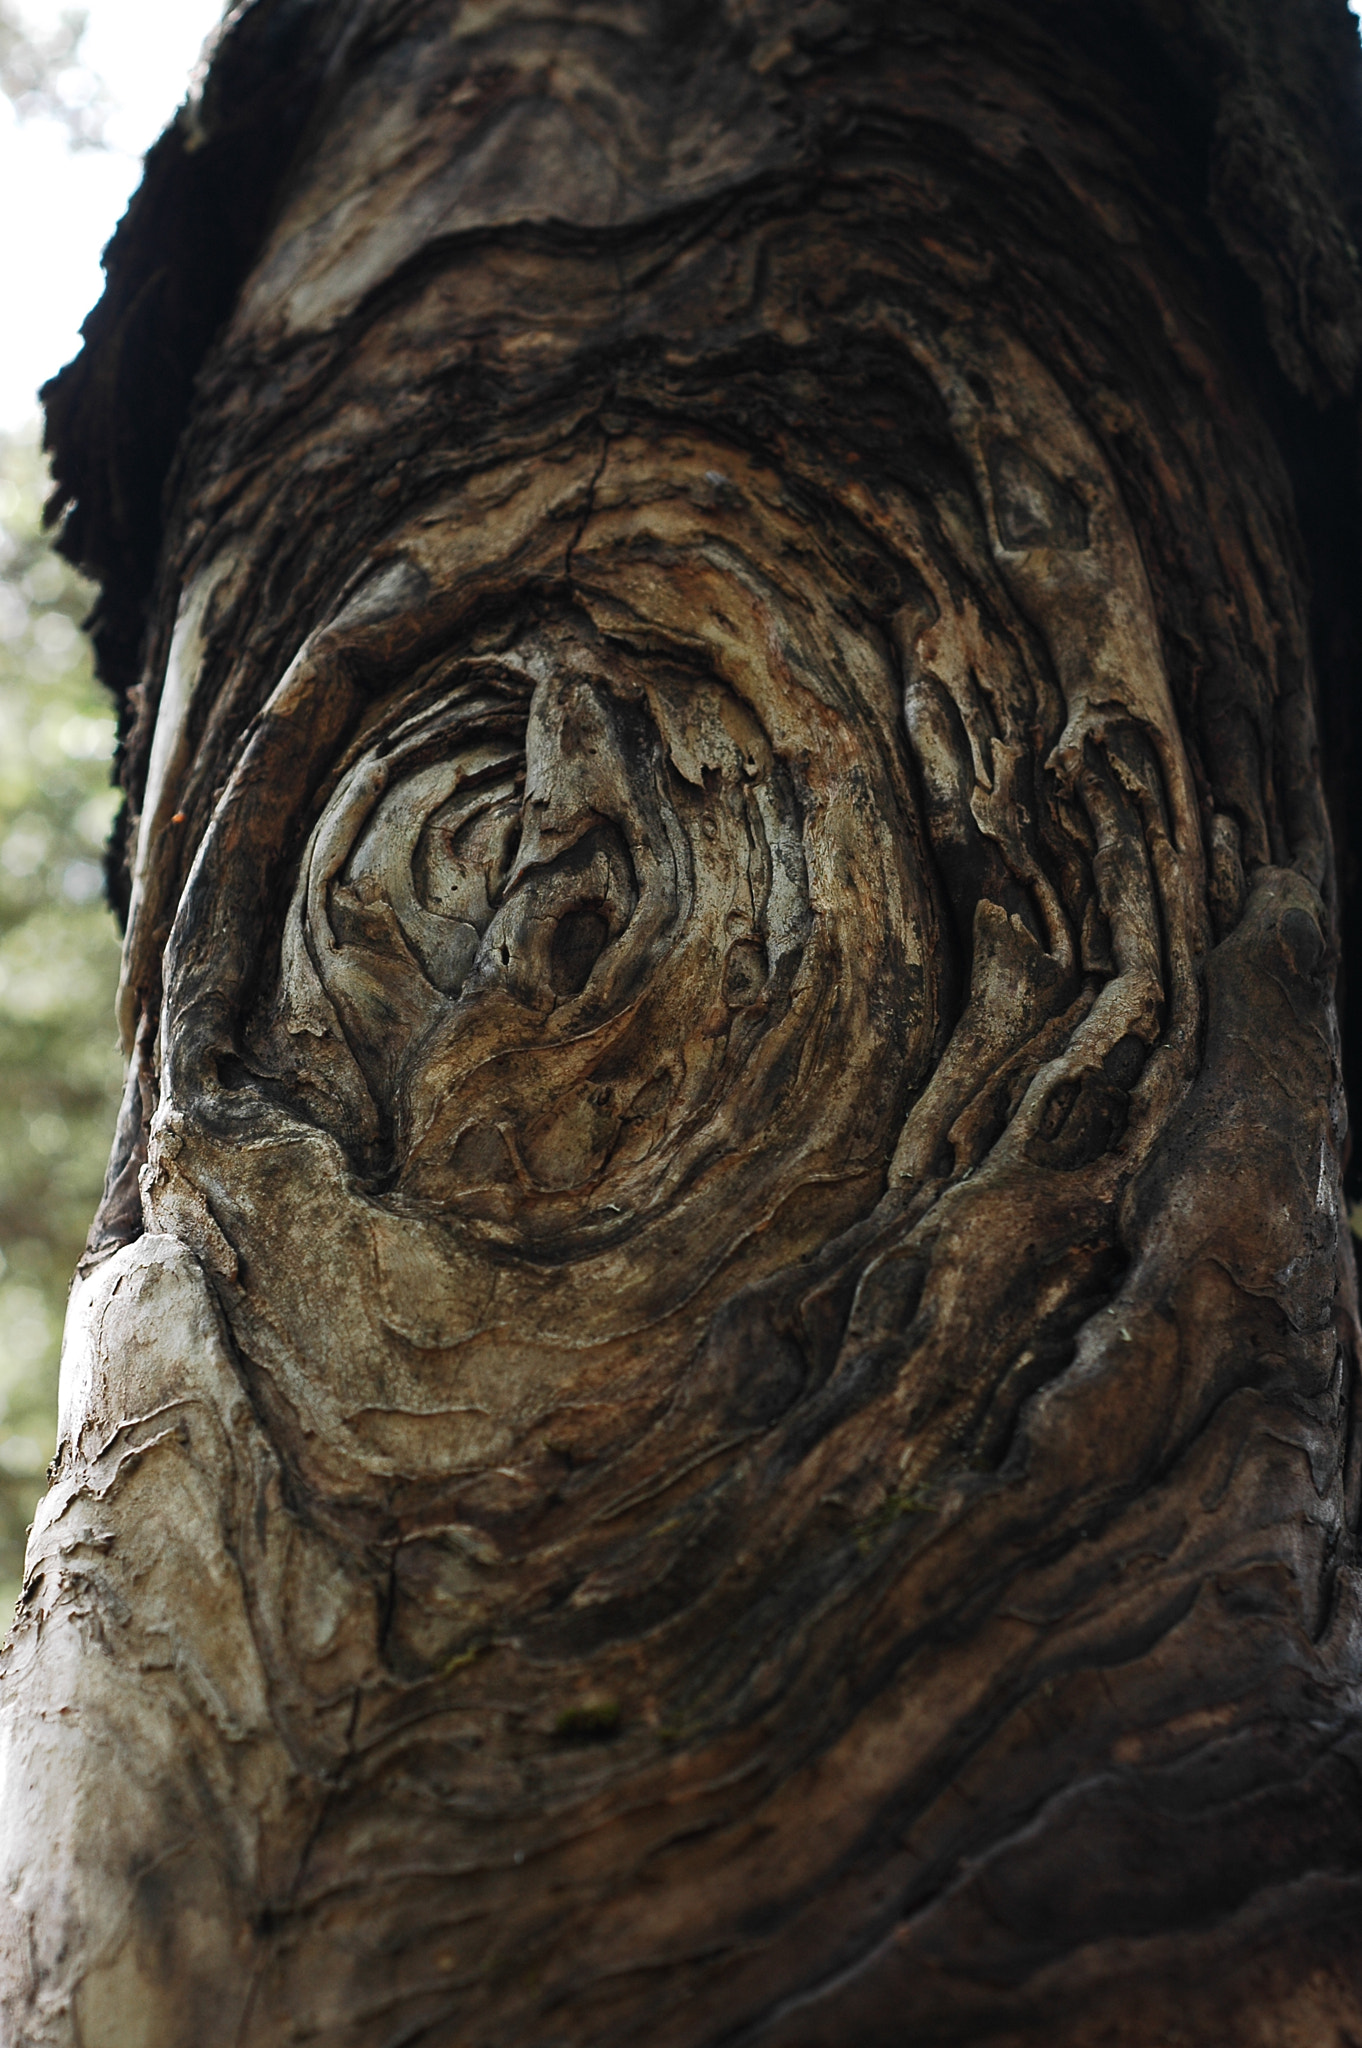 Nikon D70 + AF Nikkor 50mm f/1.8 N sample photo. Carved tree photography